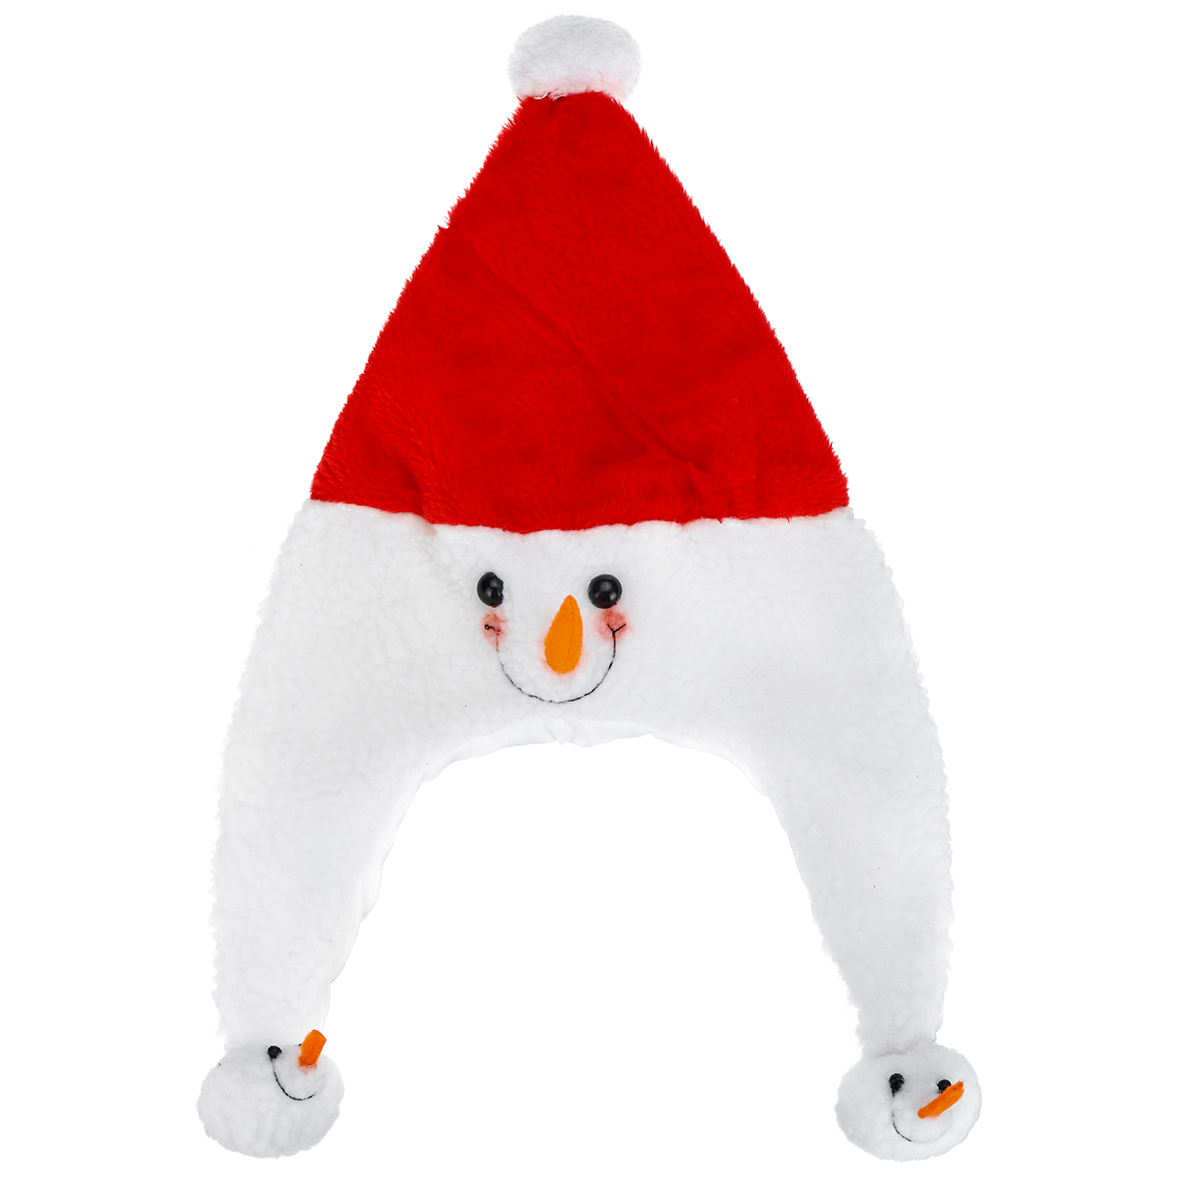 Unisex-Christmas-Xmas-Novelty-Plush-Hat-Santa-Claus-Hat-Holiday-Decoration-1747495-4